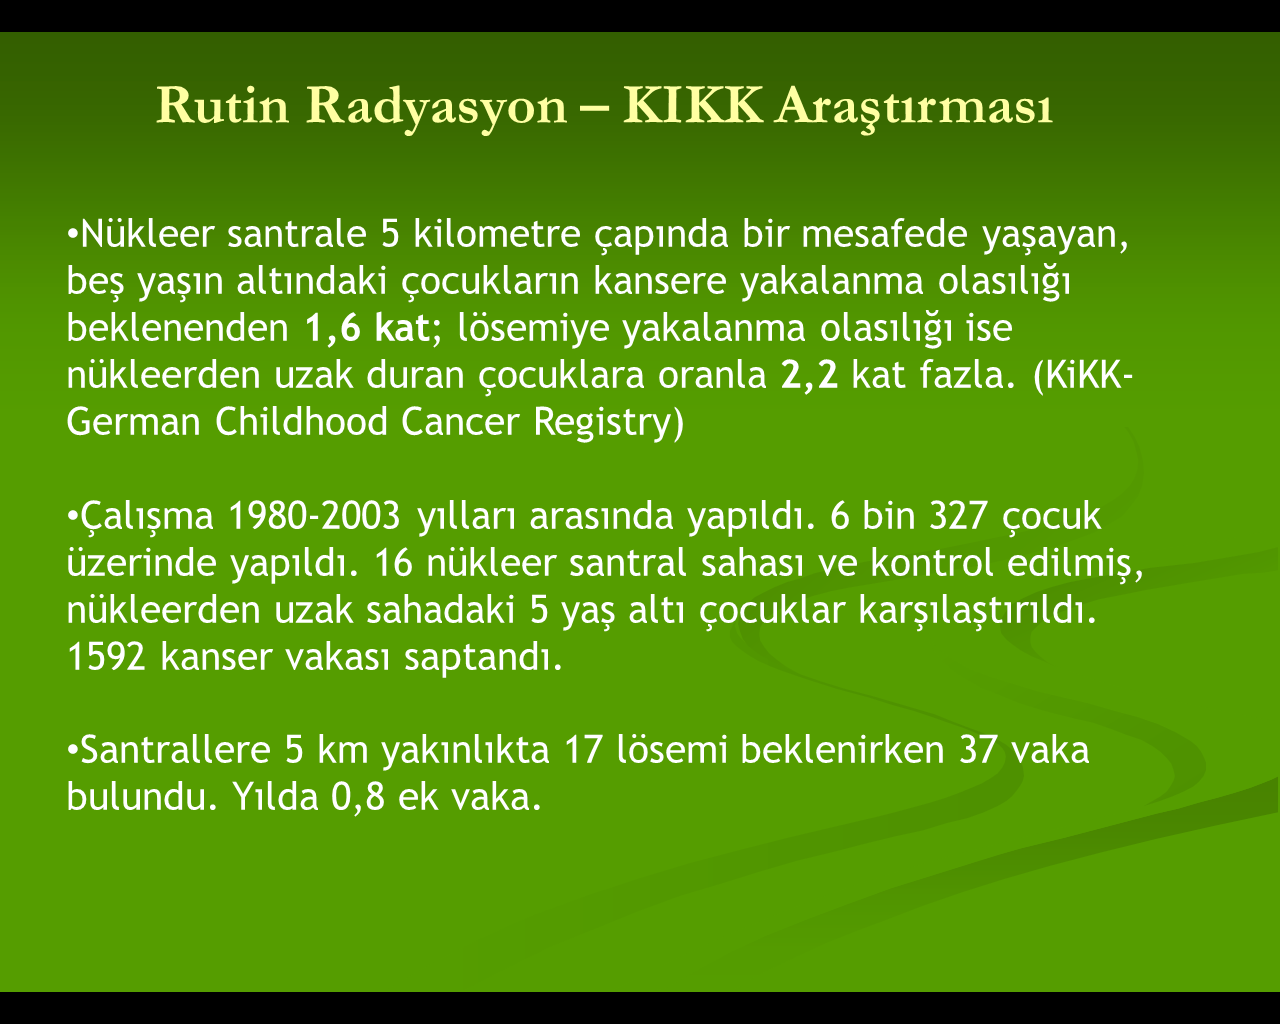 TMMOB 9. Enerji Sempozyumu Ankara 12-13-14 Aralık 2013 göre biz de hangi kaynaktan emisyon indirimi yapacağınızı hesaplayalım.